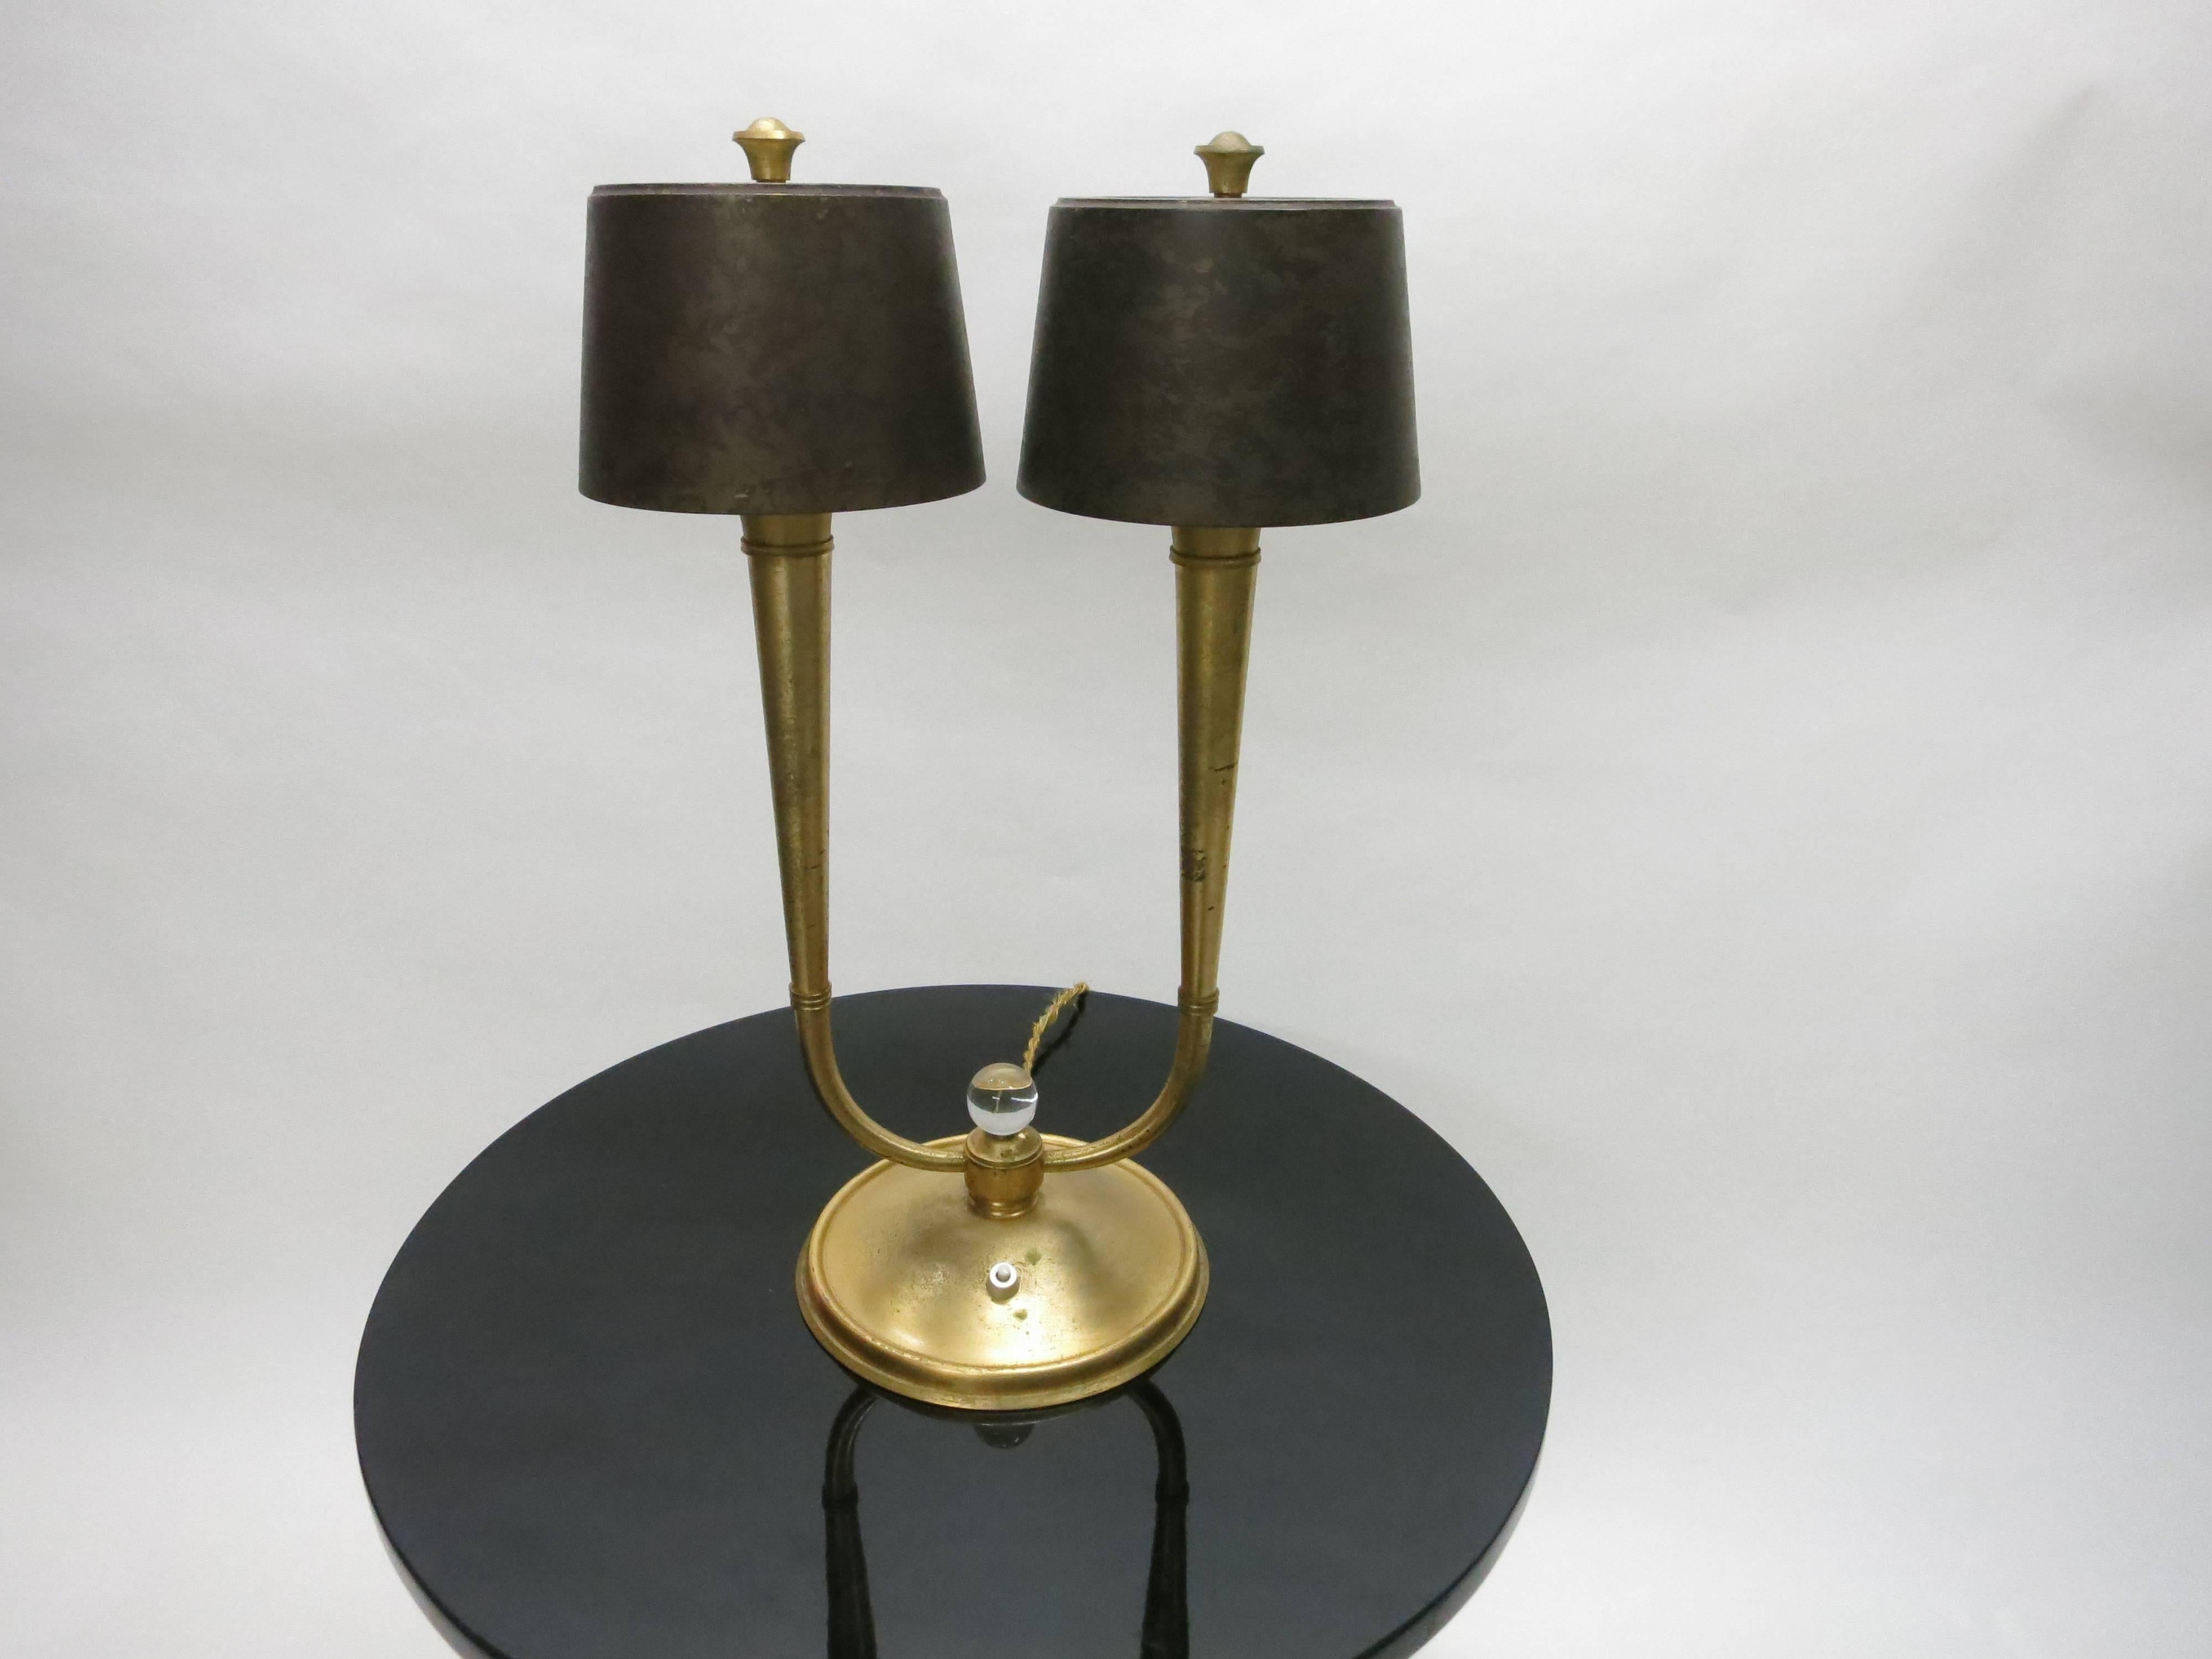 Paire de lampes de table françaises par Gênet et Michon. Chaque lampe a une base ronde avec deux bras cannelés, en bronze doré, séparés par une boule de cristal ronde. Chacun des quatre abat-jour, en bronze, a une patine plus foncée et un diffuseur